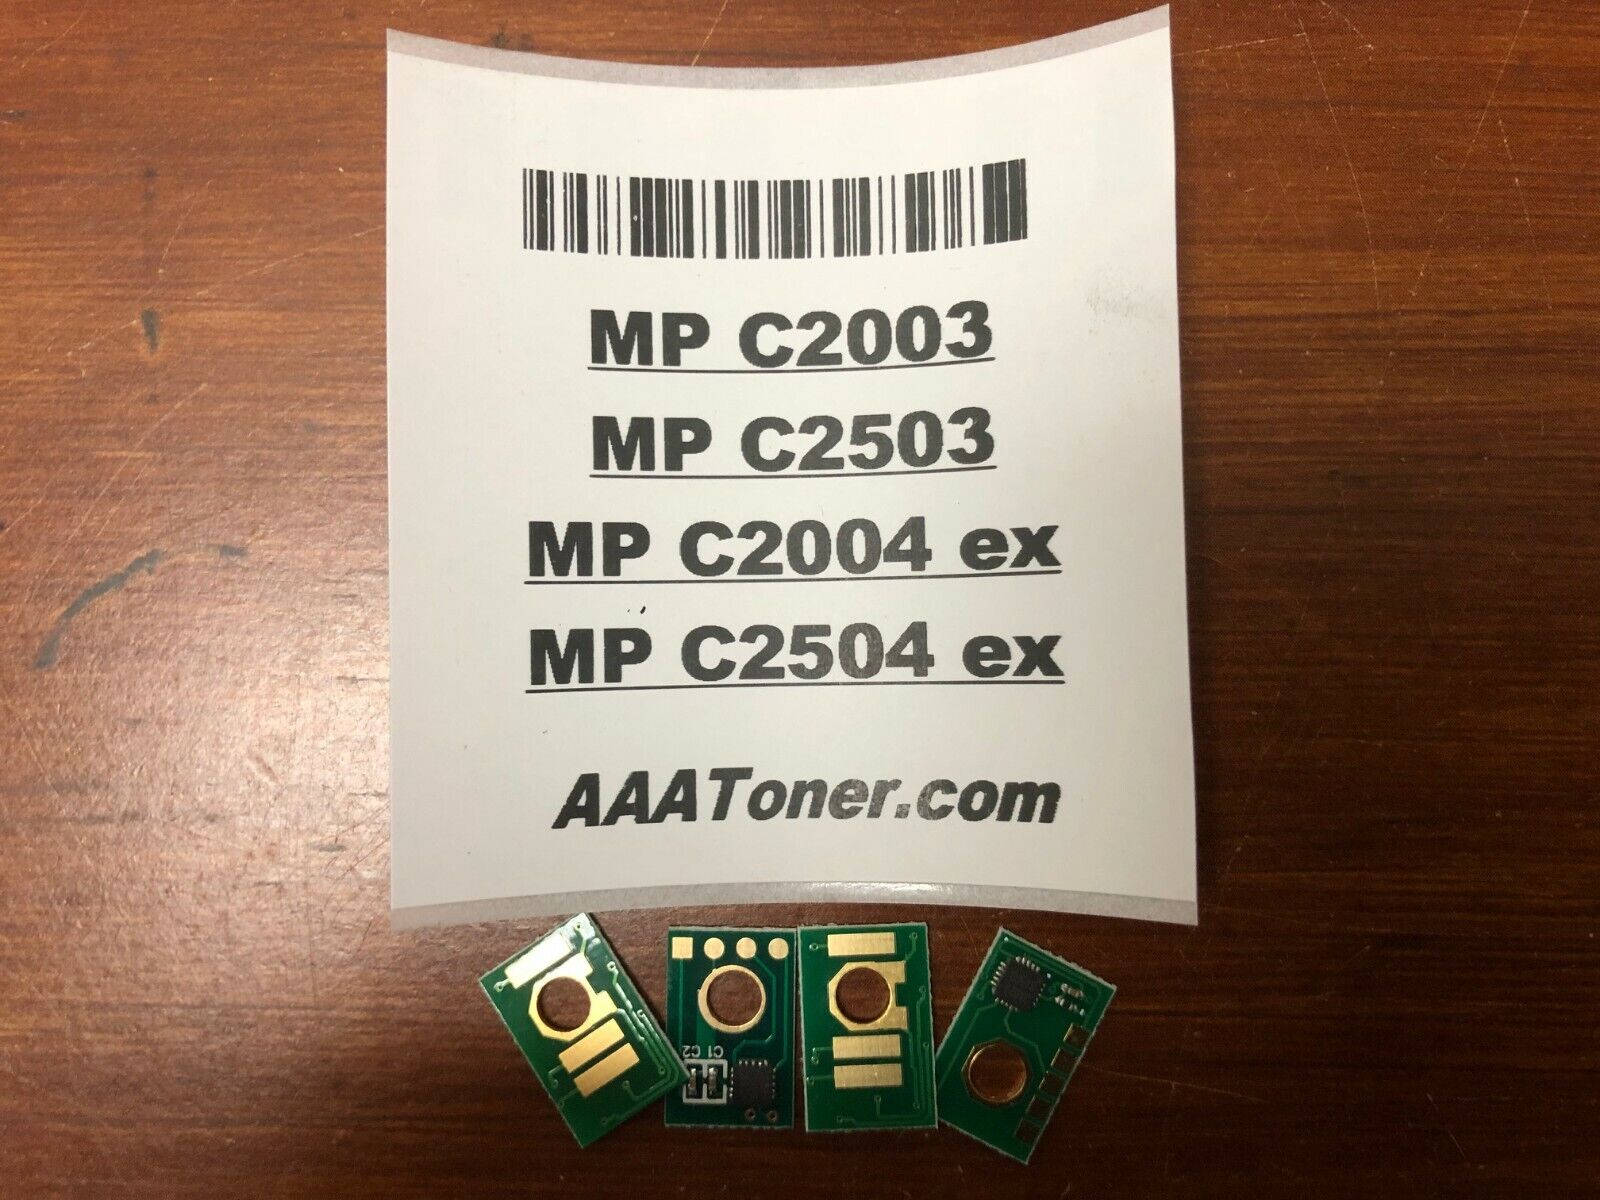 4 x Toner Chips for Ricoh MP C2003, C2004 ex, C2503, C2504 ex Refill